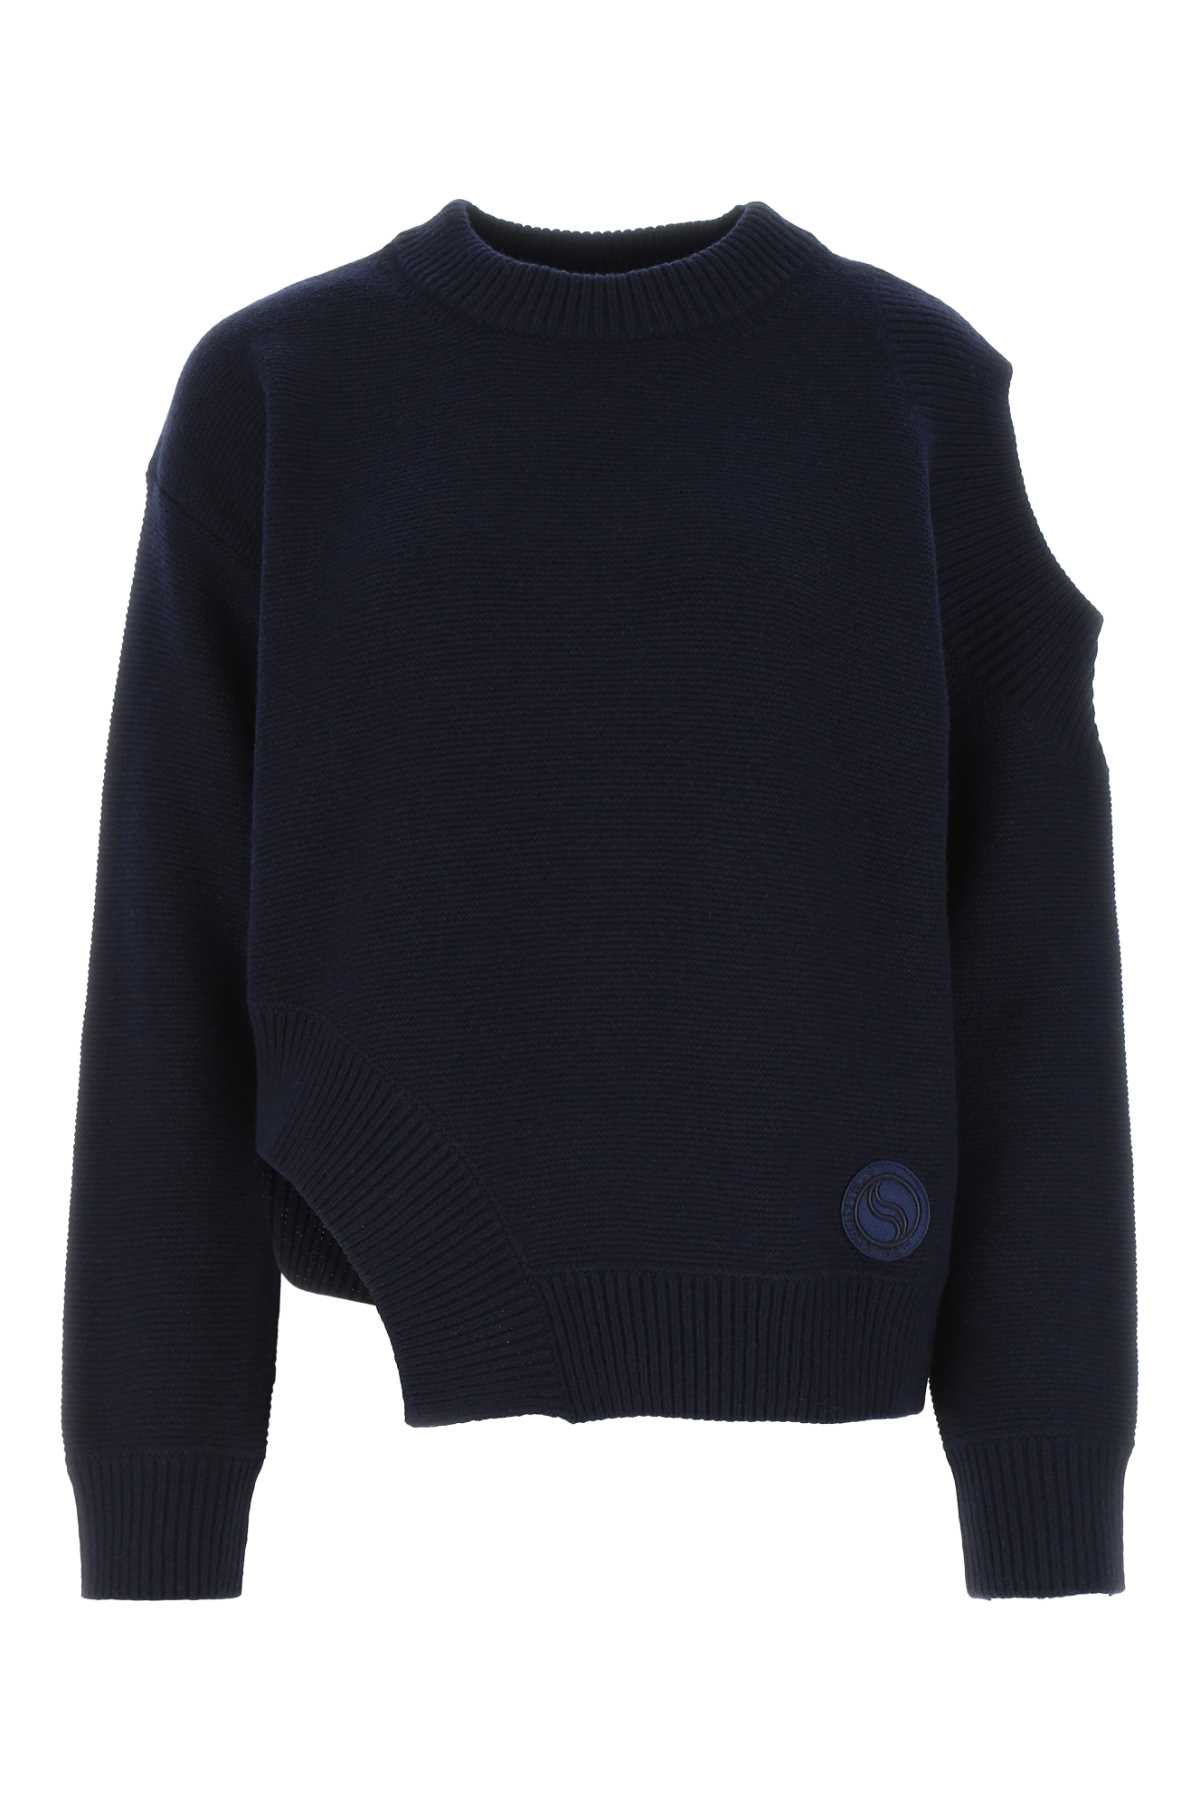 Stella McCartney Dark Blue Cashmere Blend Sweater